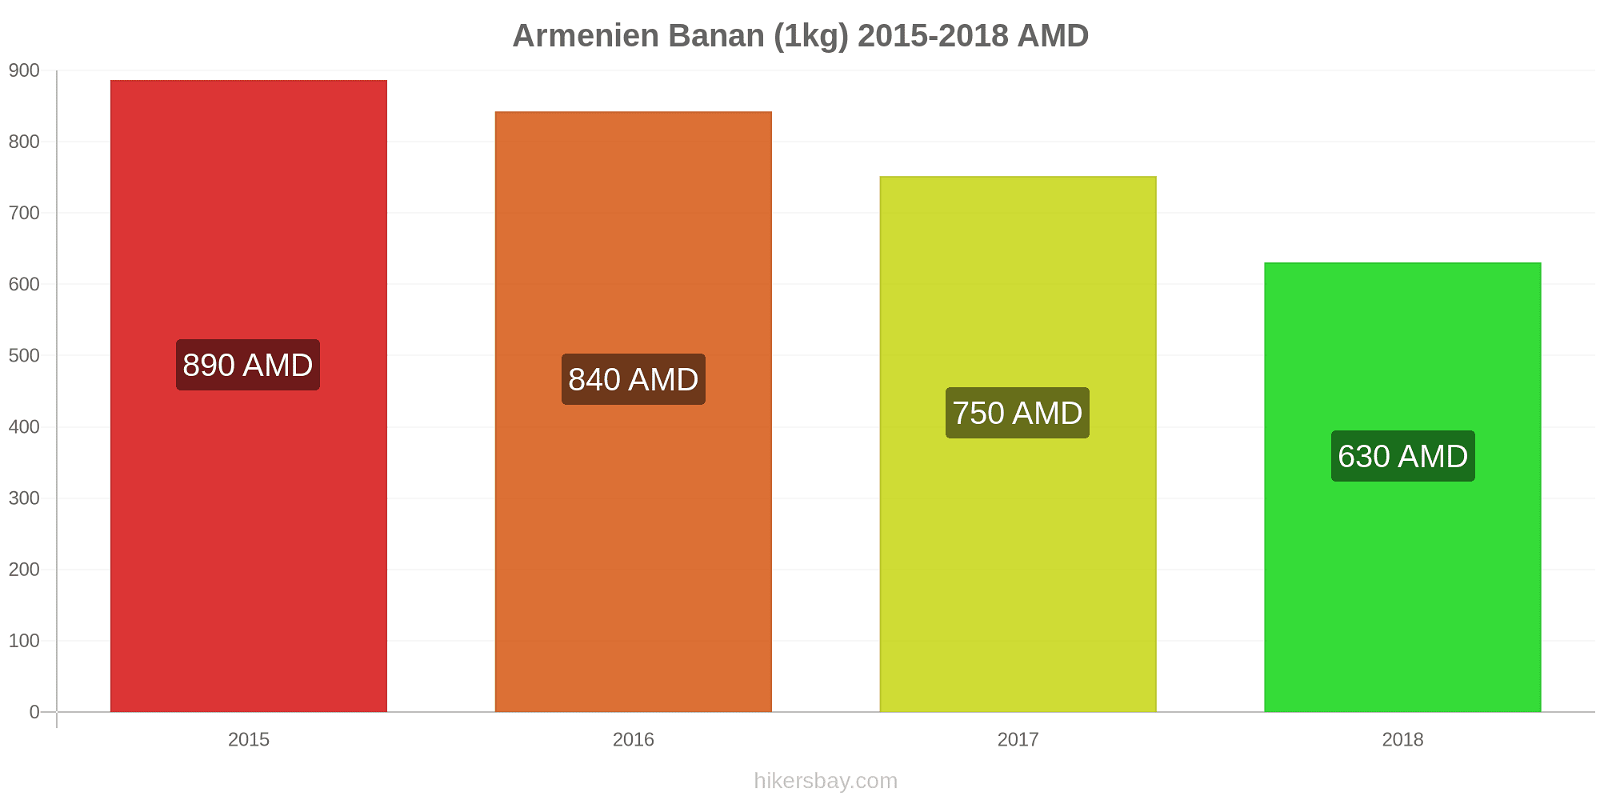 Armenien prisændringer Bananer (1kg) hikersbay.com